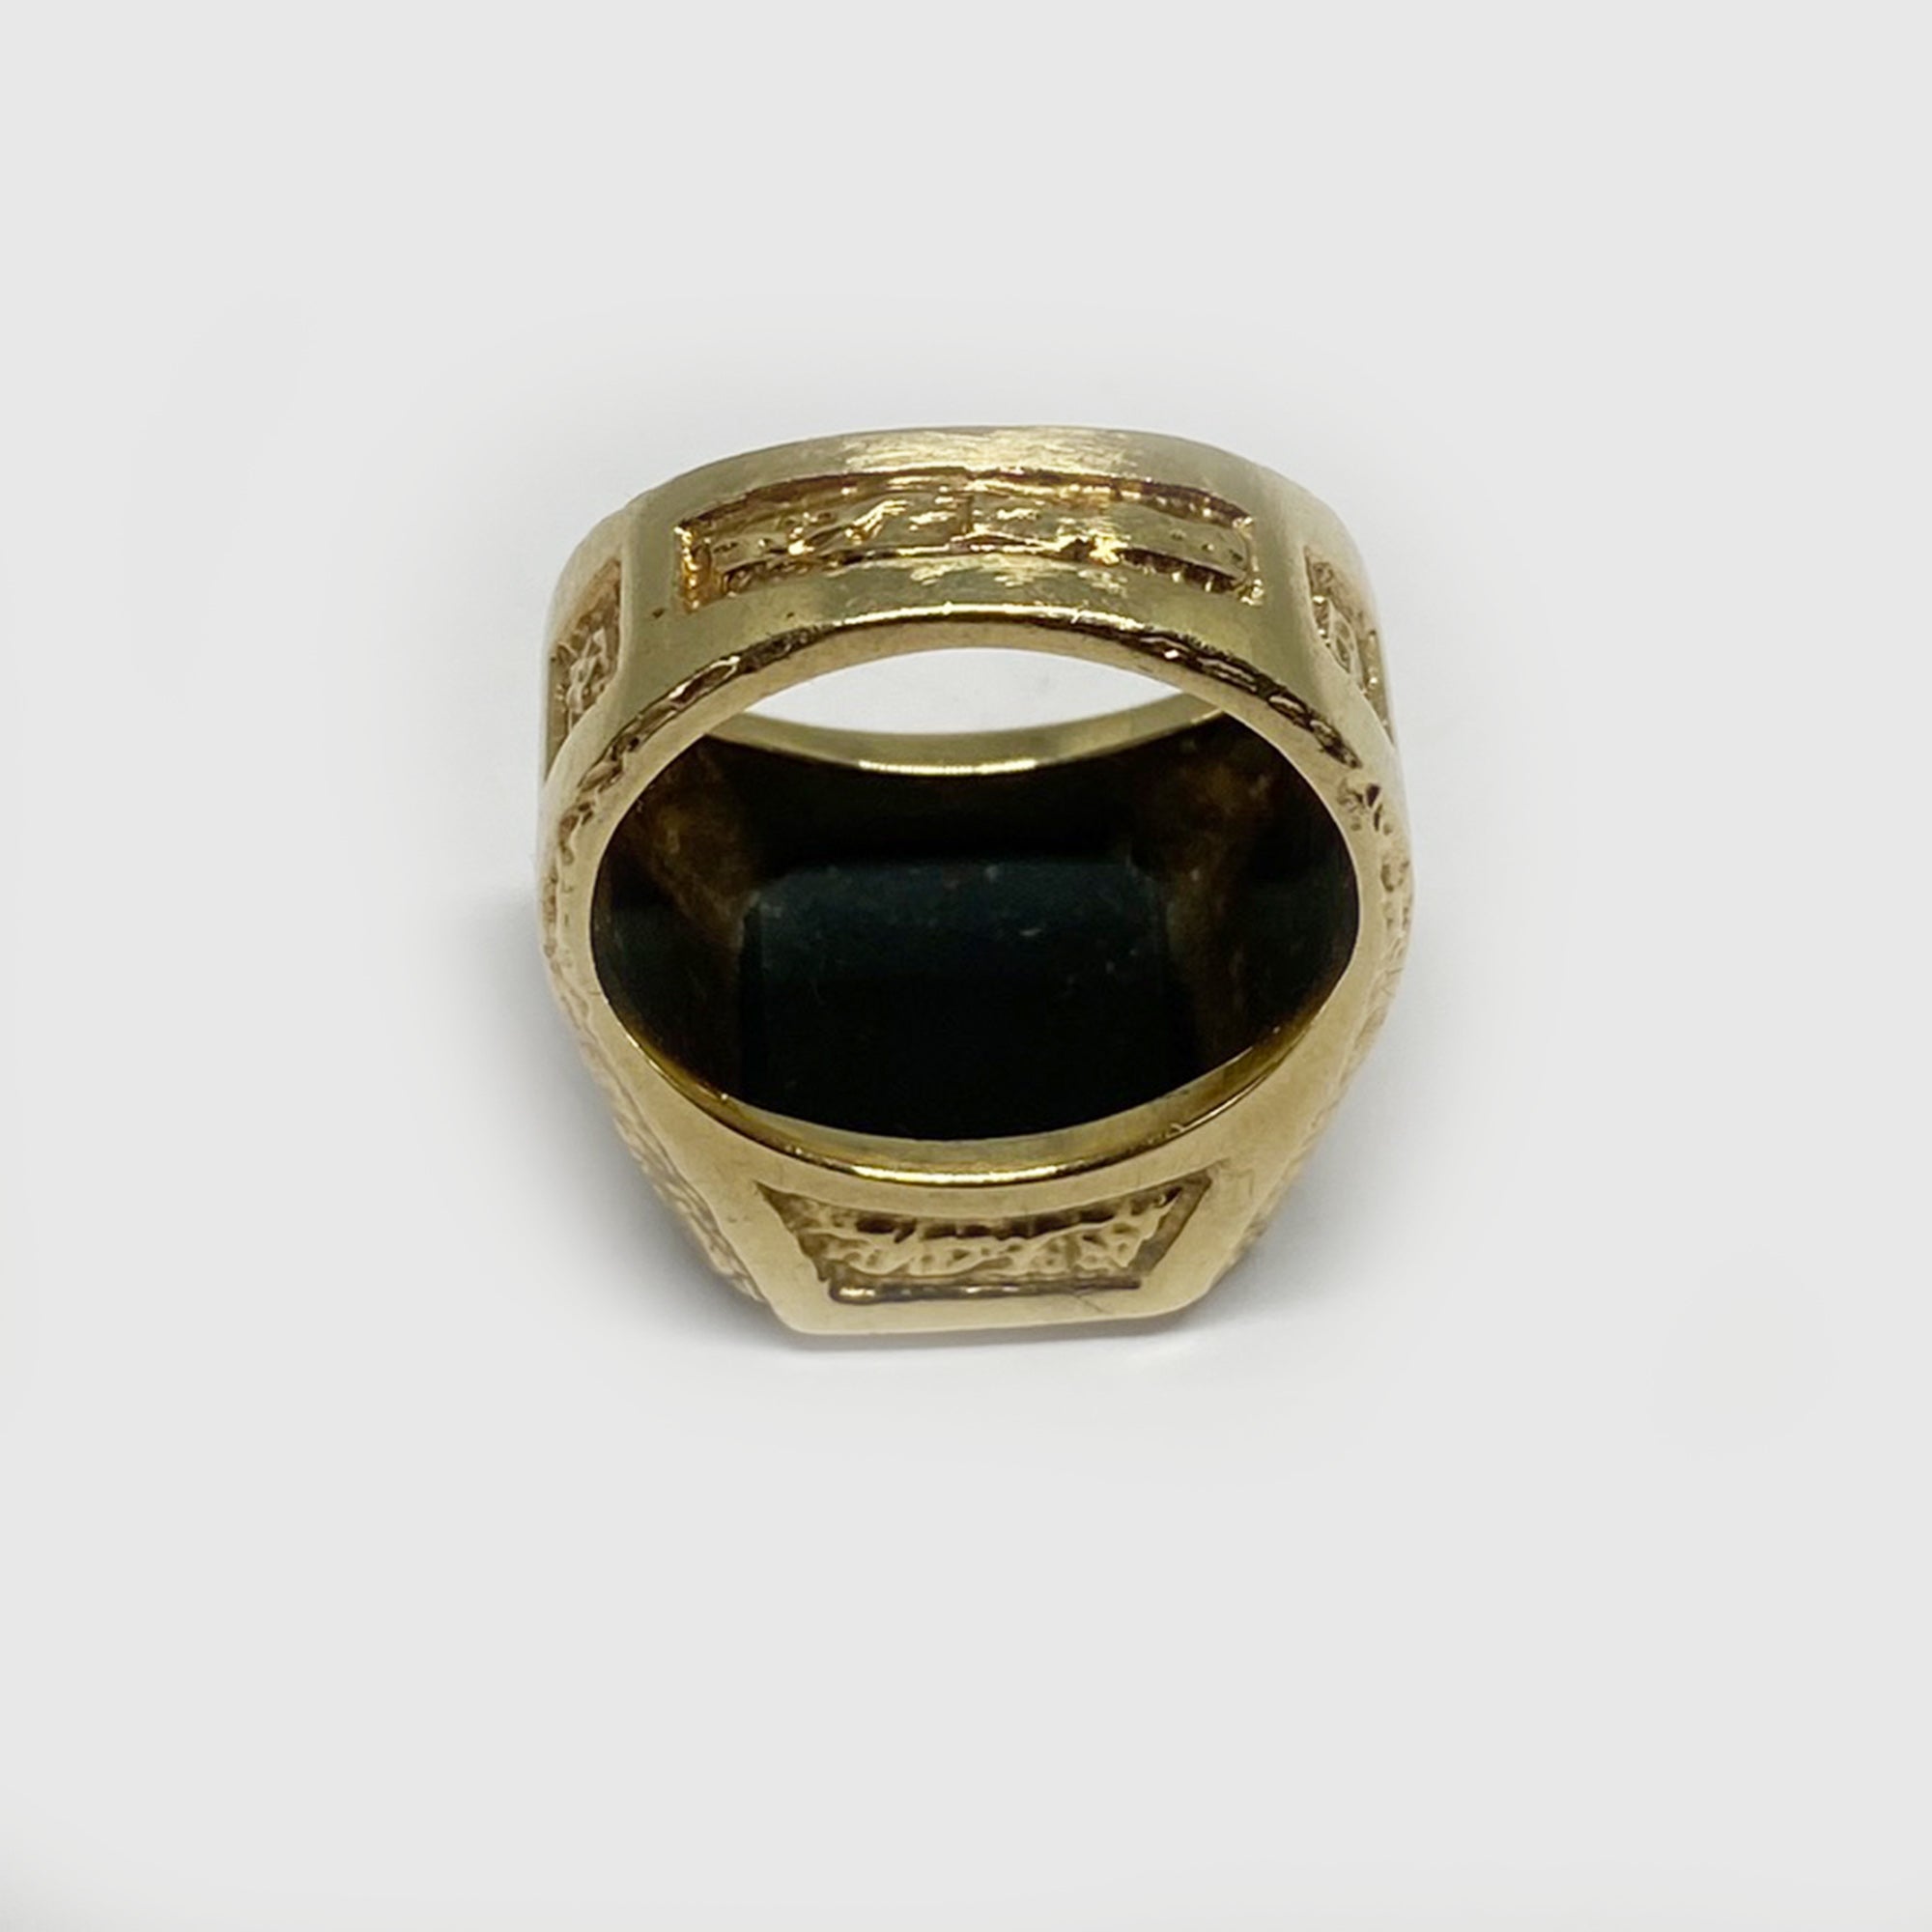 Antique 14k Gold Intaglio Ring